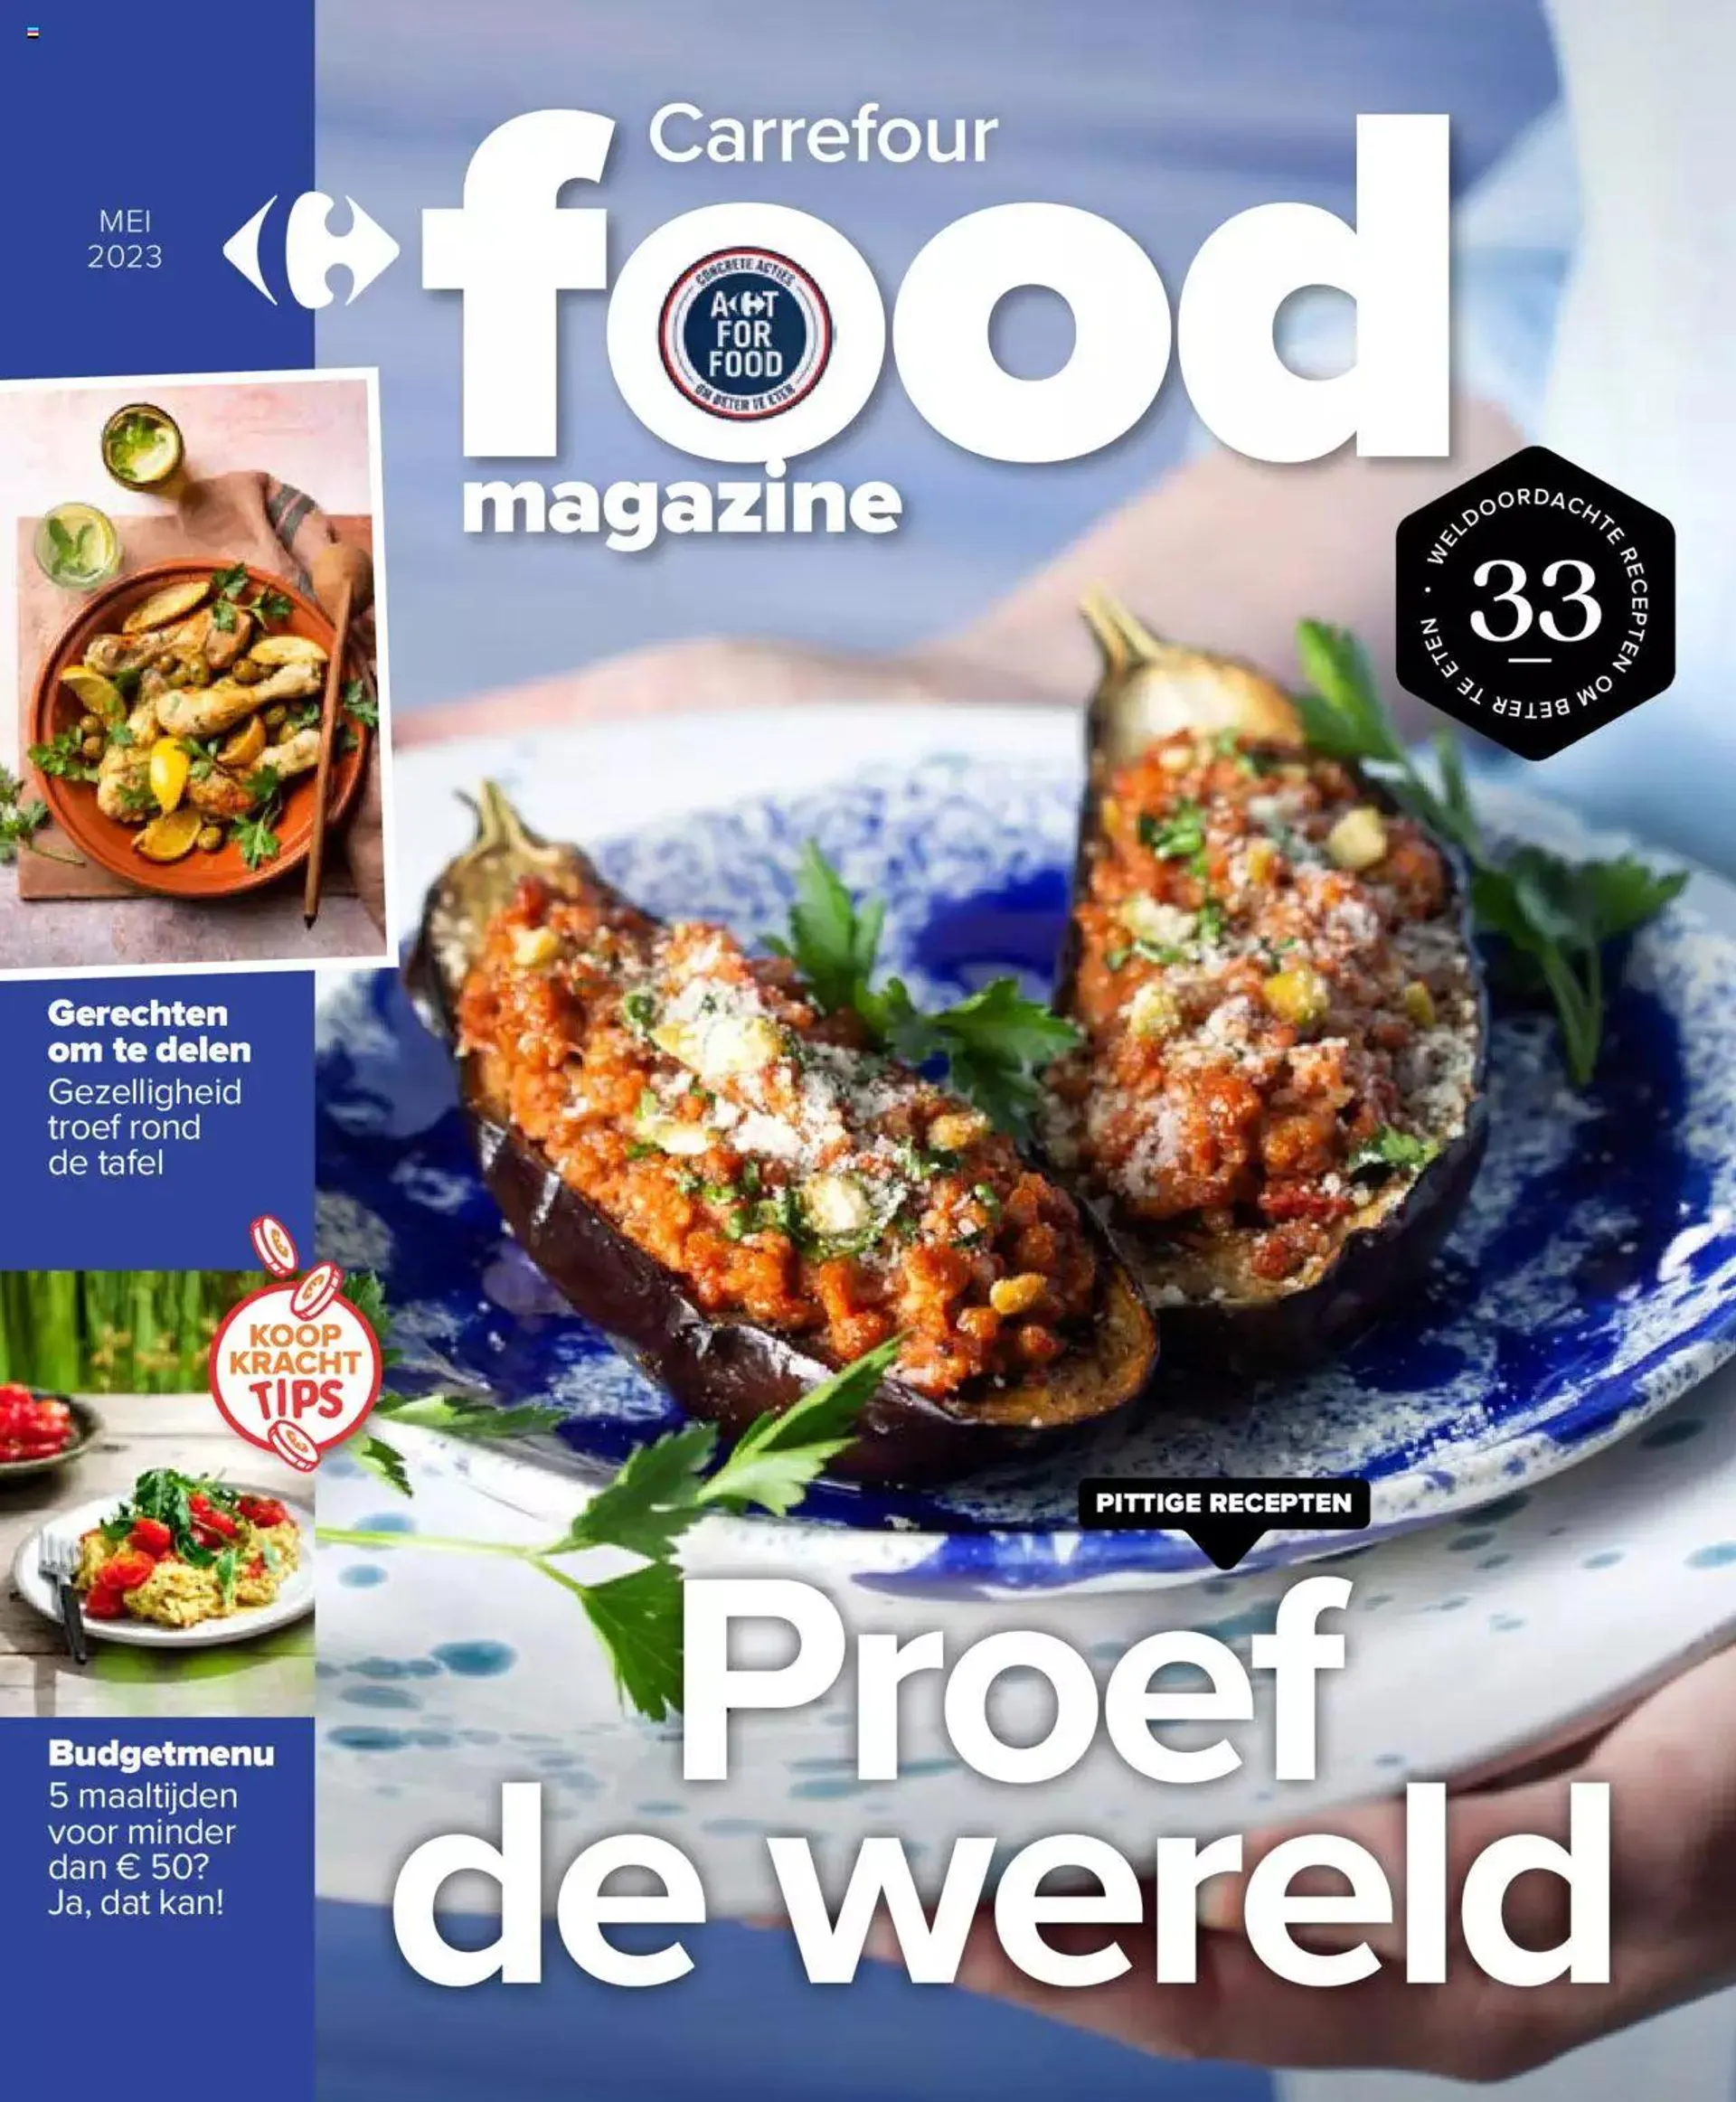 Carrefour folder - Food Magazine Mei 2023 - 0